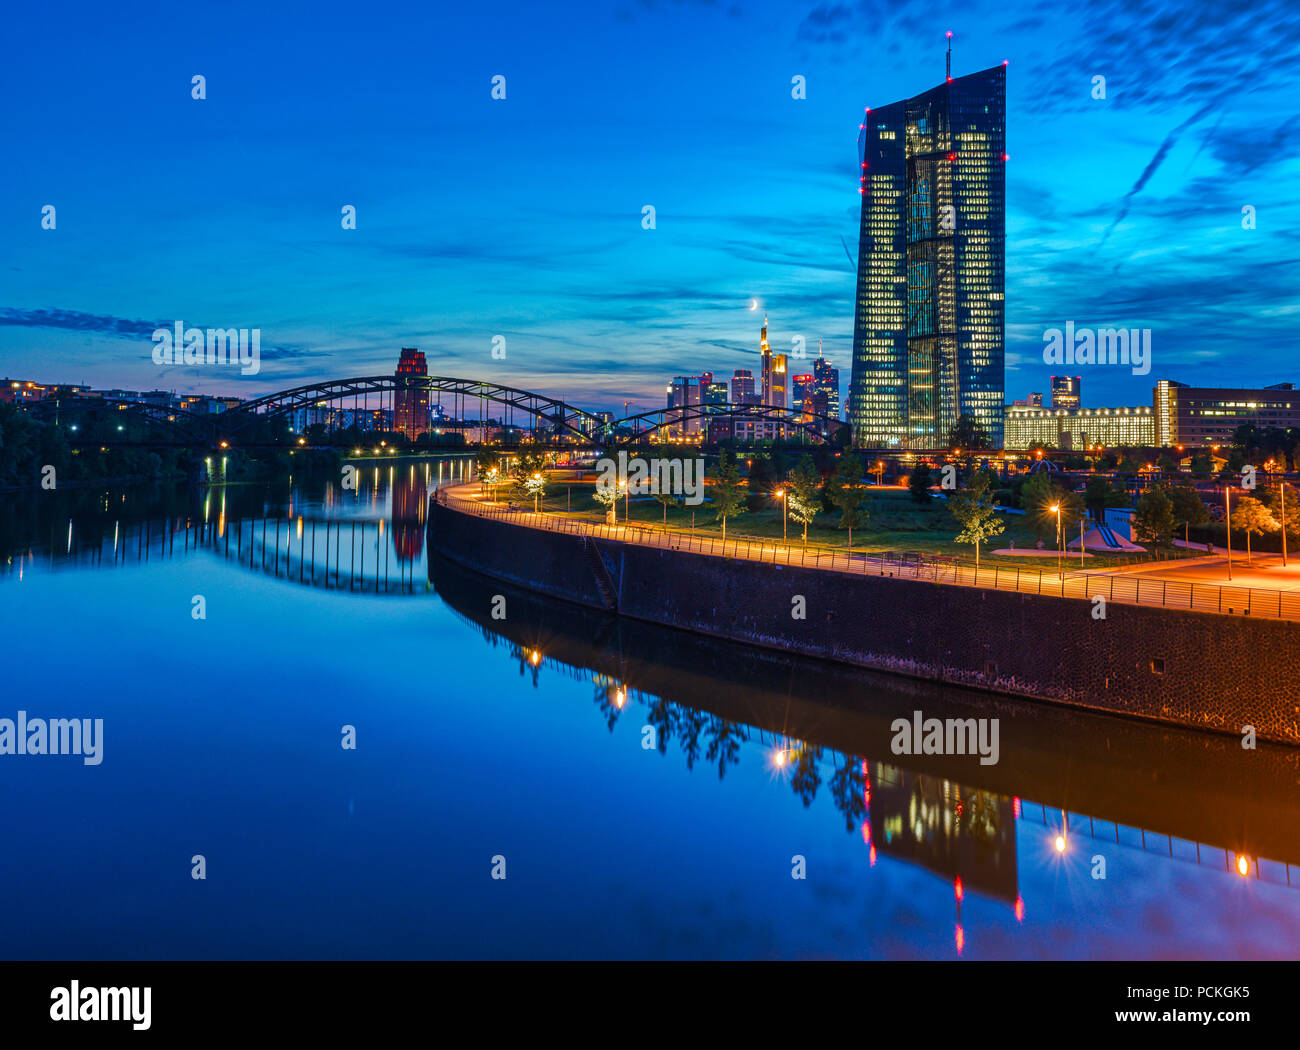 Banque centrale européenne, BCE, au crépuscule, en face de la skyline illuminée, rond-point de la pont Osthafen, Frankfurt am Main Banque D'Images